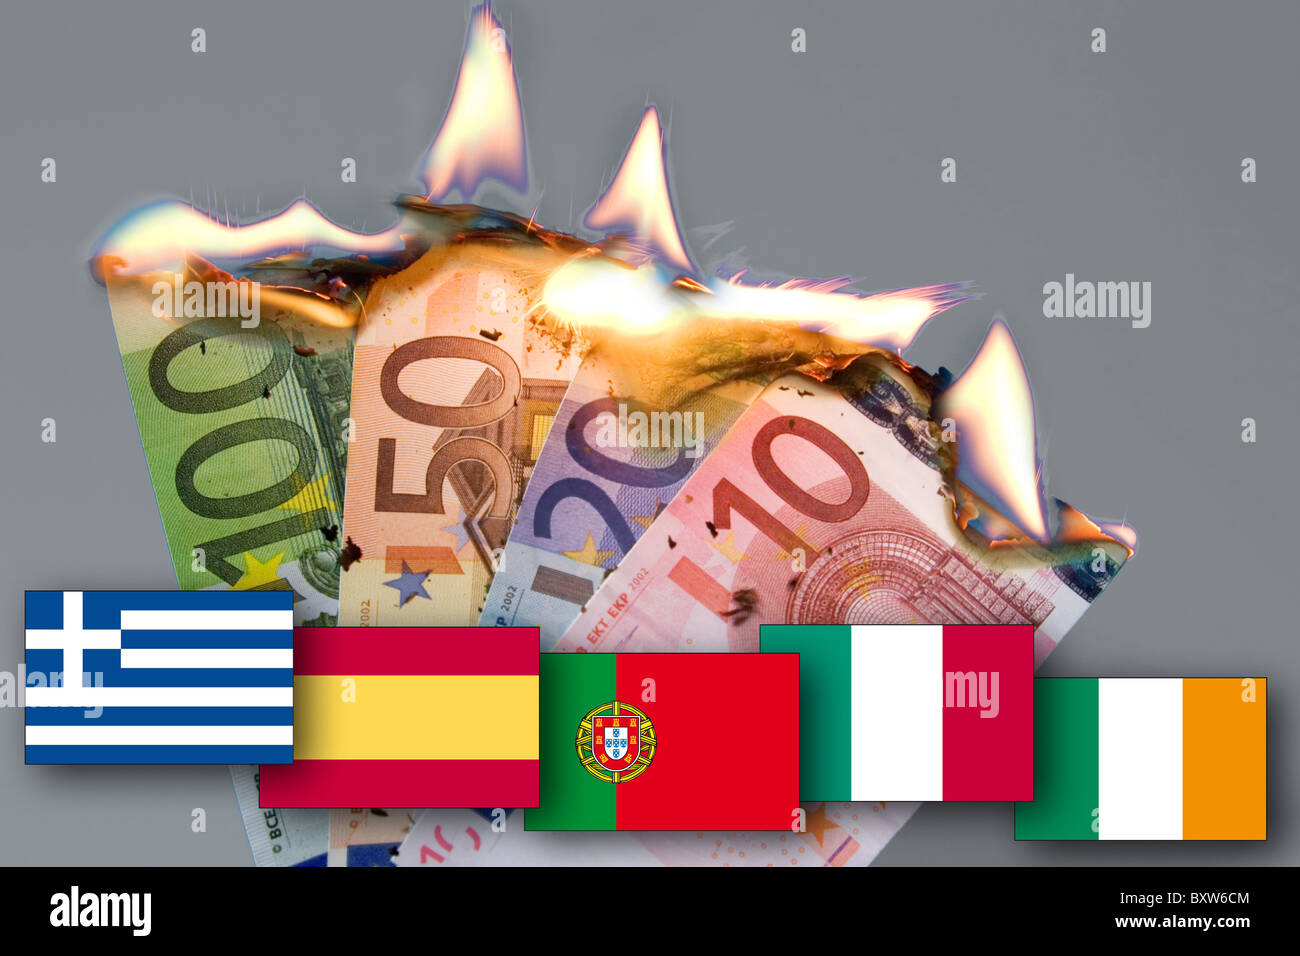 Billets de banque en feu de la crise monétaire attendue EUR effondrement de l'euro photo son drapeau symbole de la mort des porcs gips piigs Banque D'Images